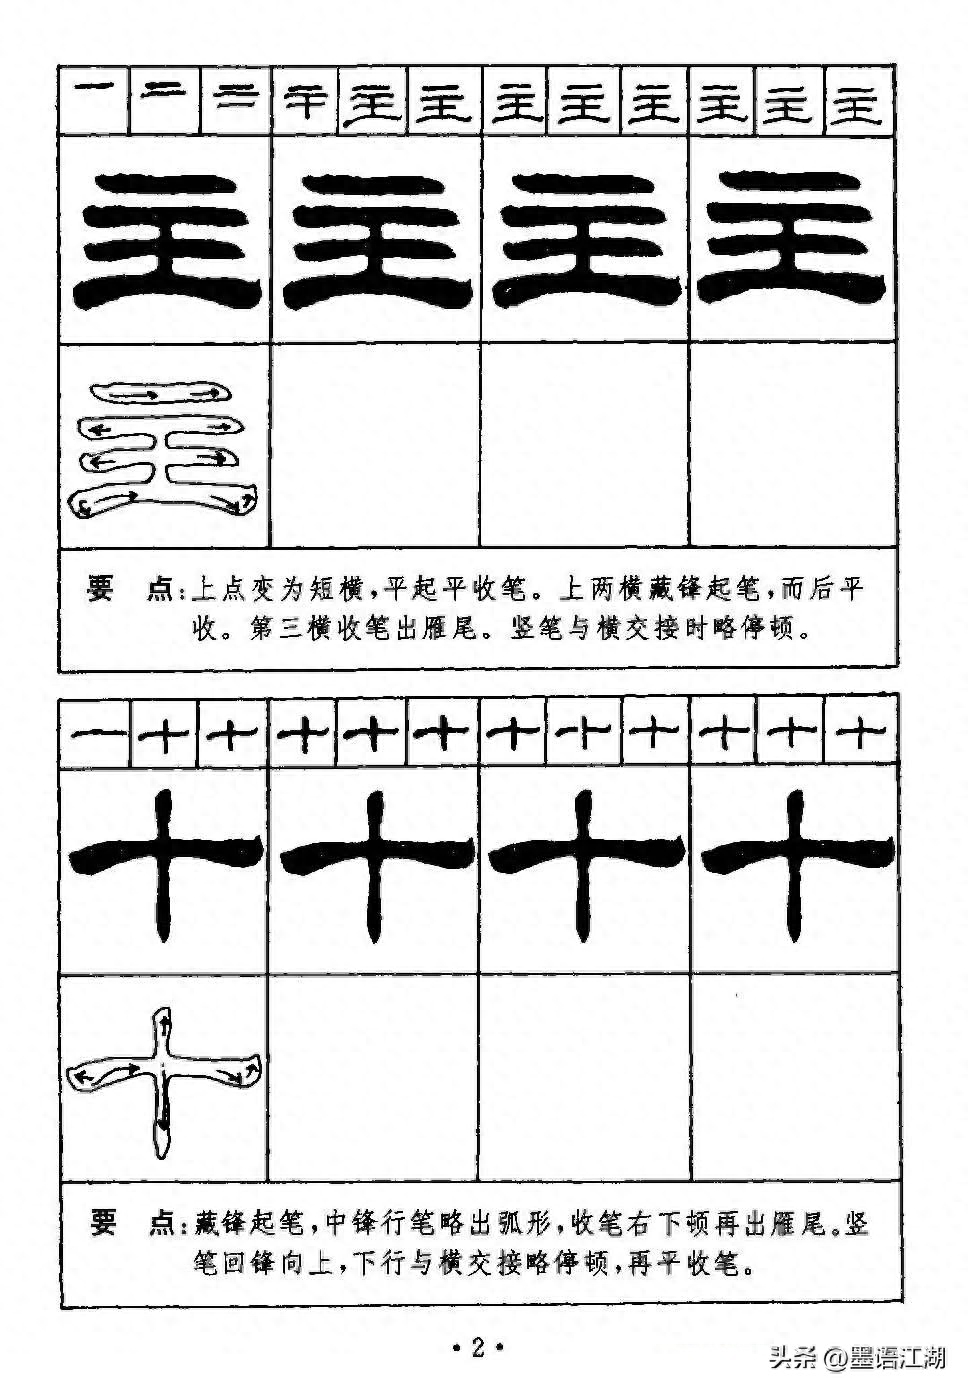 劉炳森隸書字帖下載《99天毛筆字速成練習法》，全書掃描圖片51張